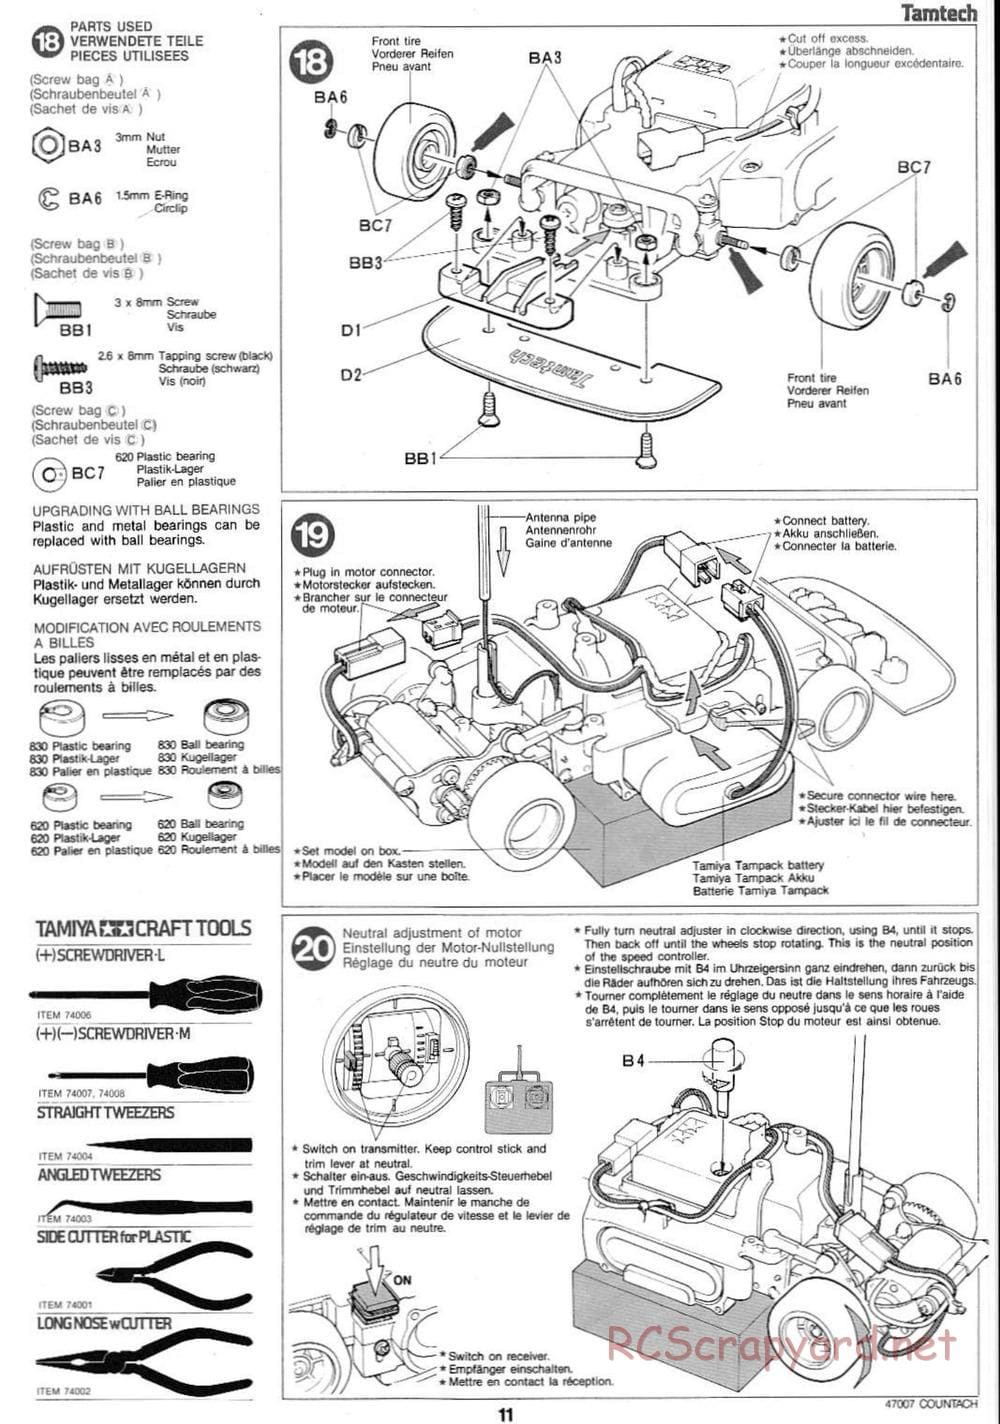 Tamiya - Tamtech - Lamborghini Countach 5000 Chassis - Manual - Page 11